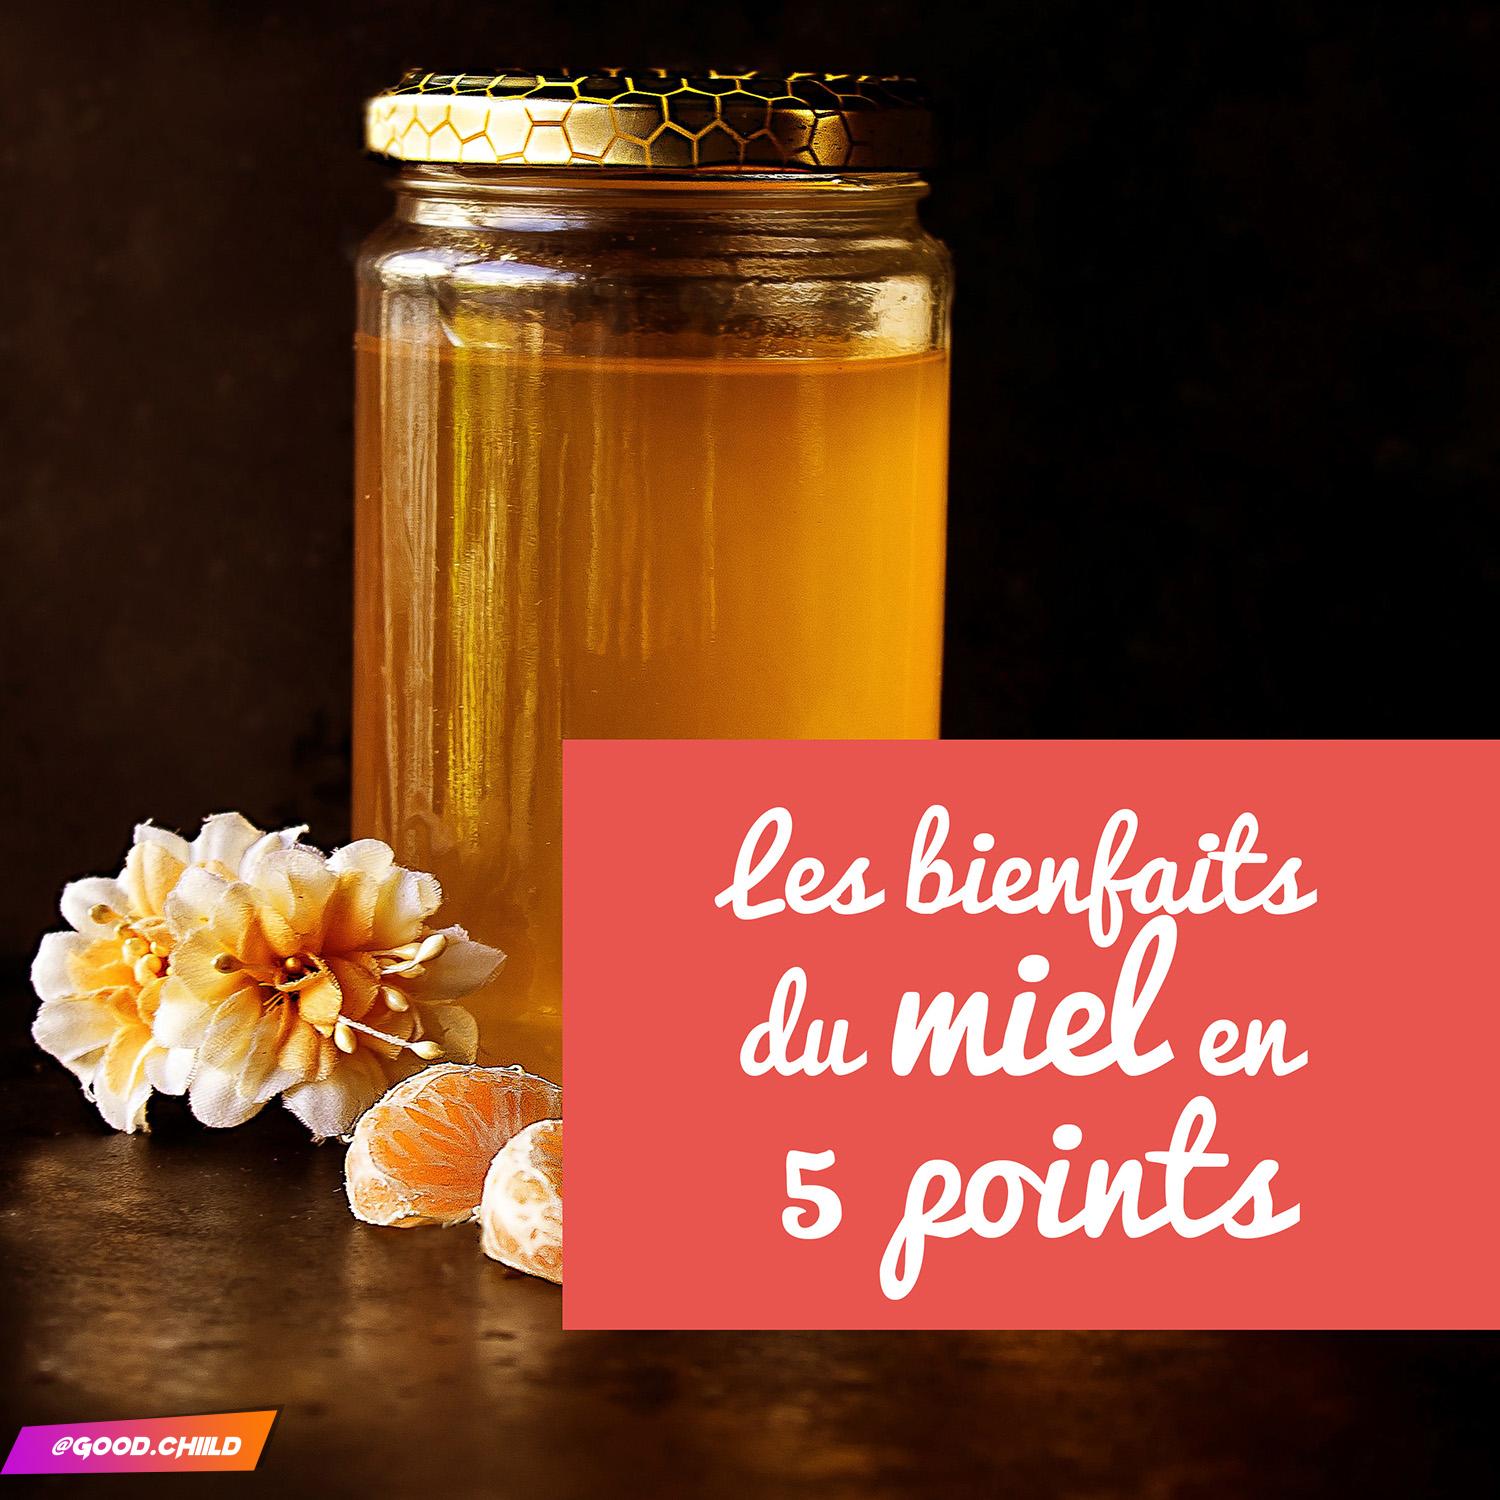 You are currently viewing Les bienfaits du miel en 5 points